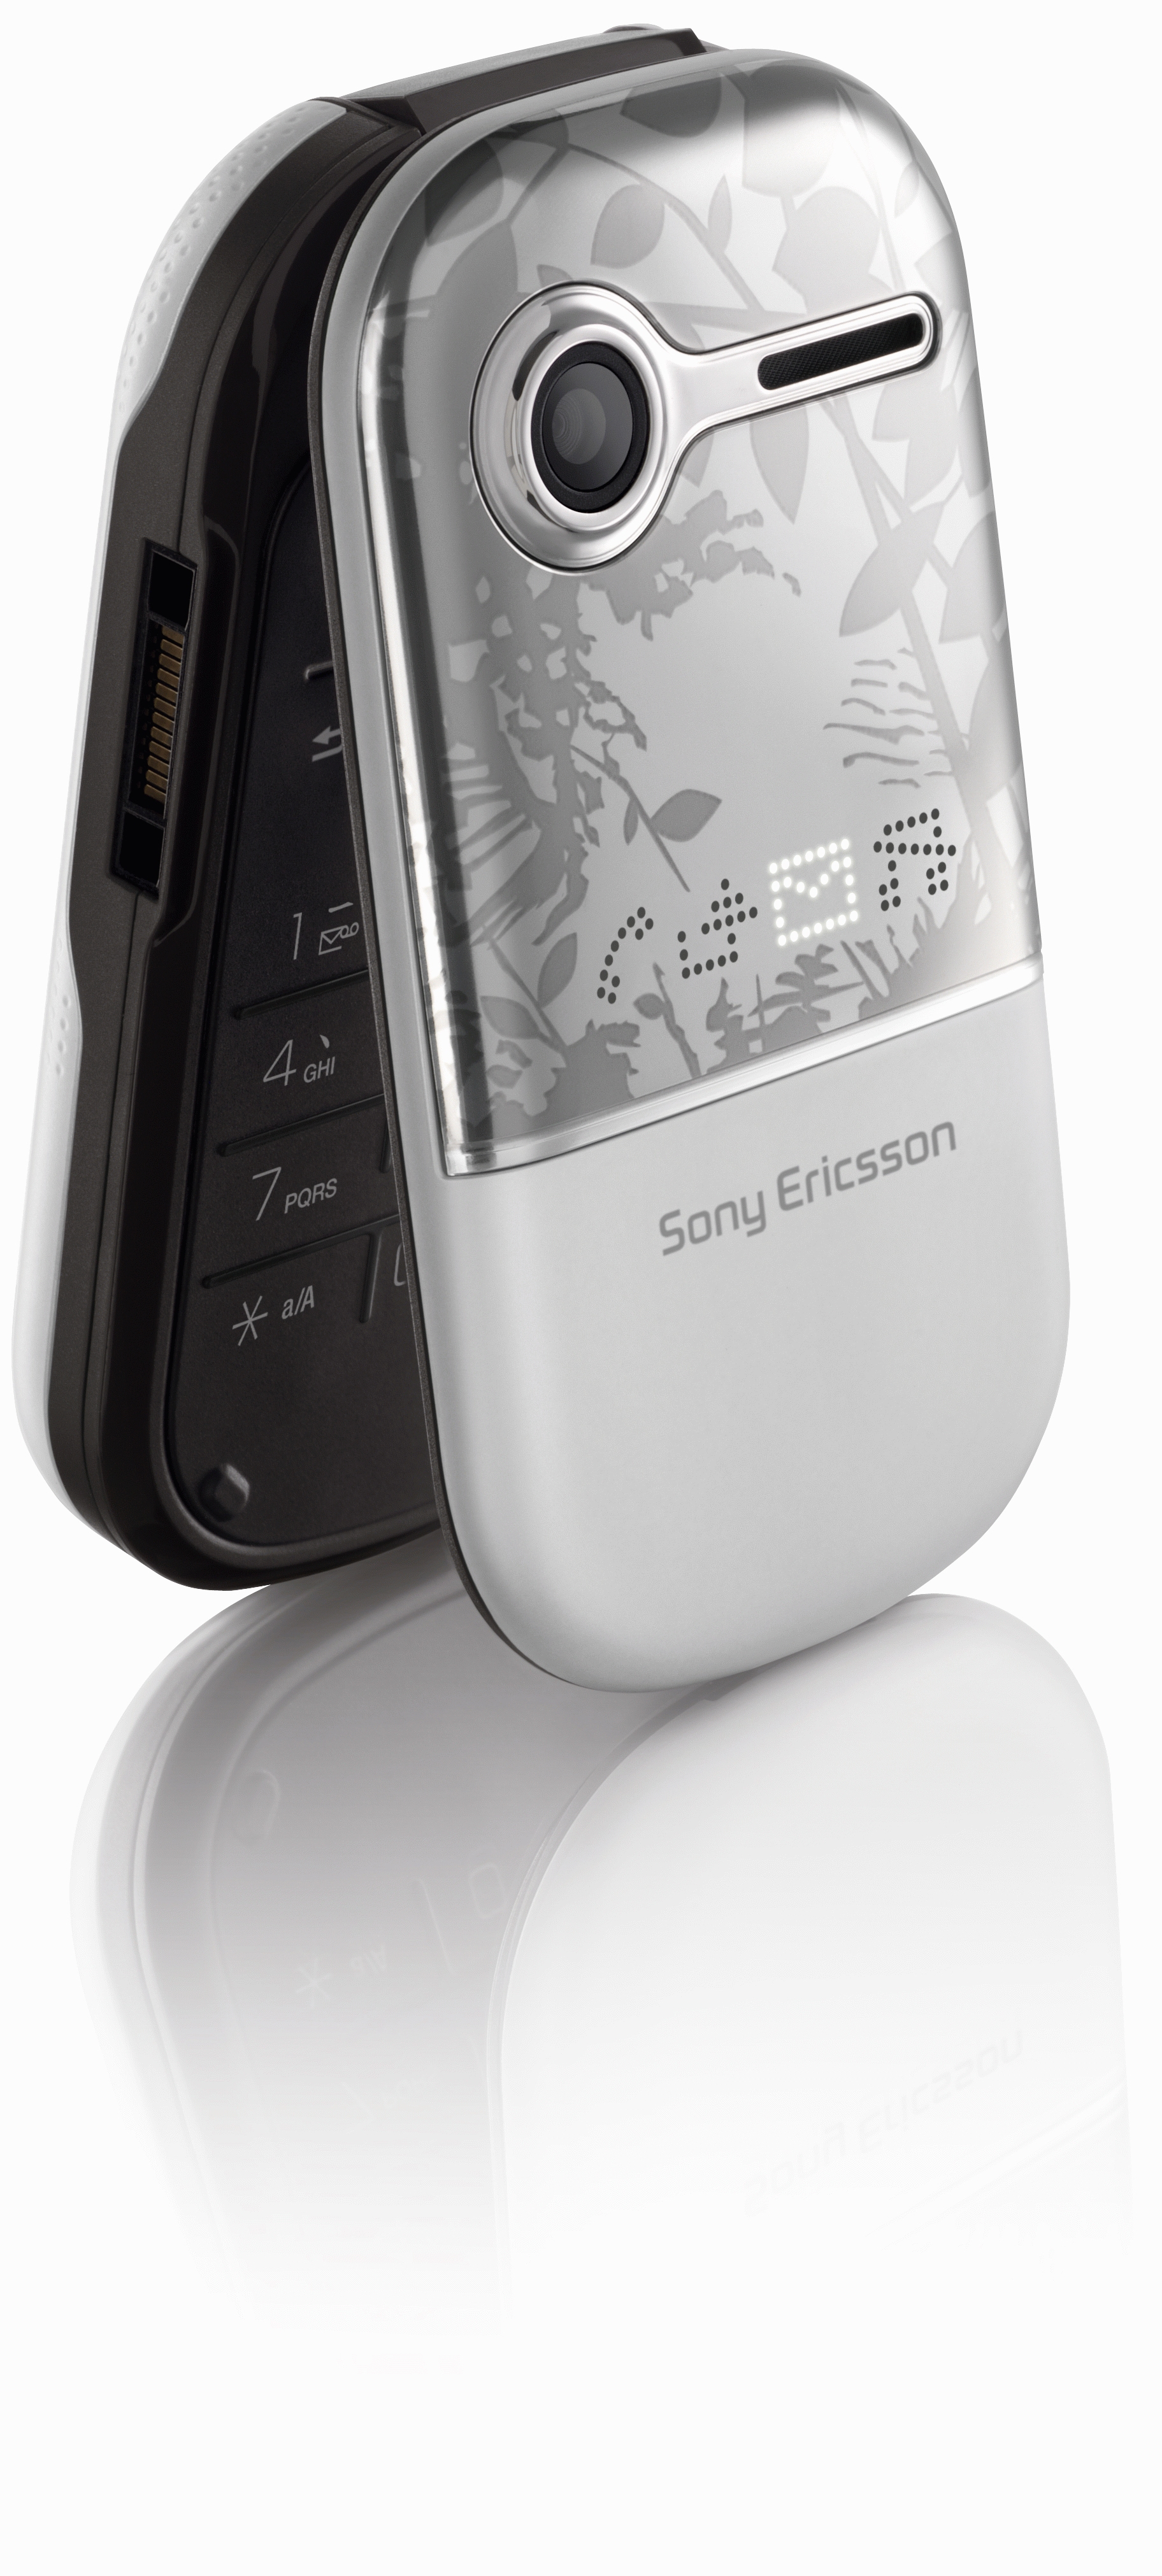 Sony Ericsson z250i